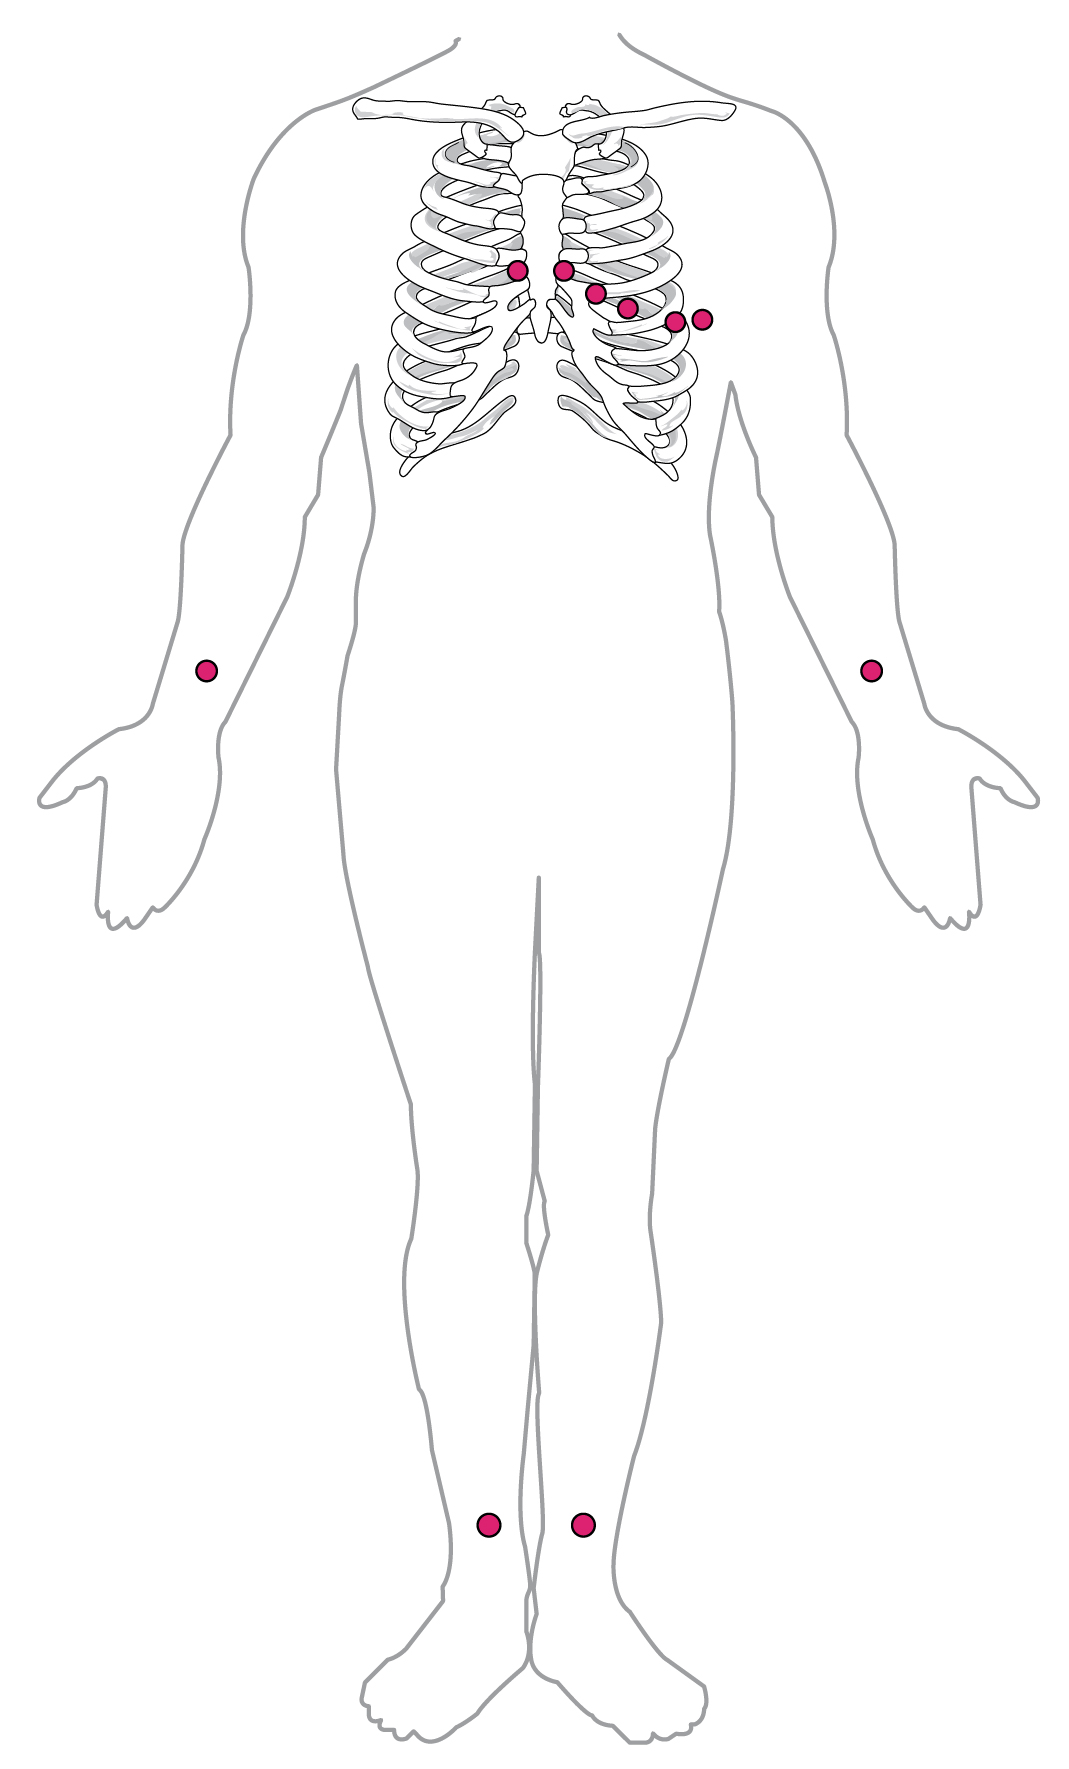 Este diagrama mostra os pontos em que os eletrodos são colocados no corpo para um ECG.